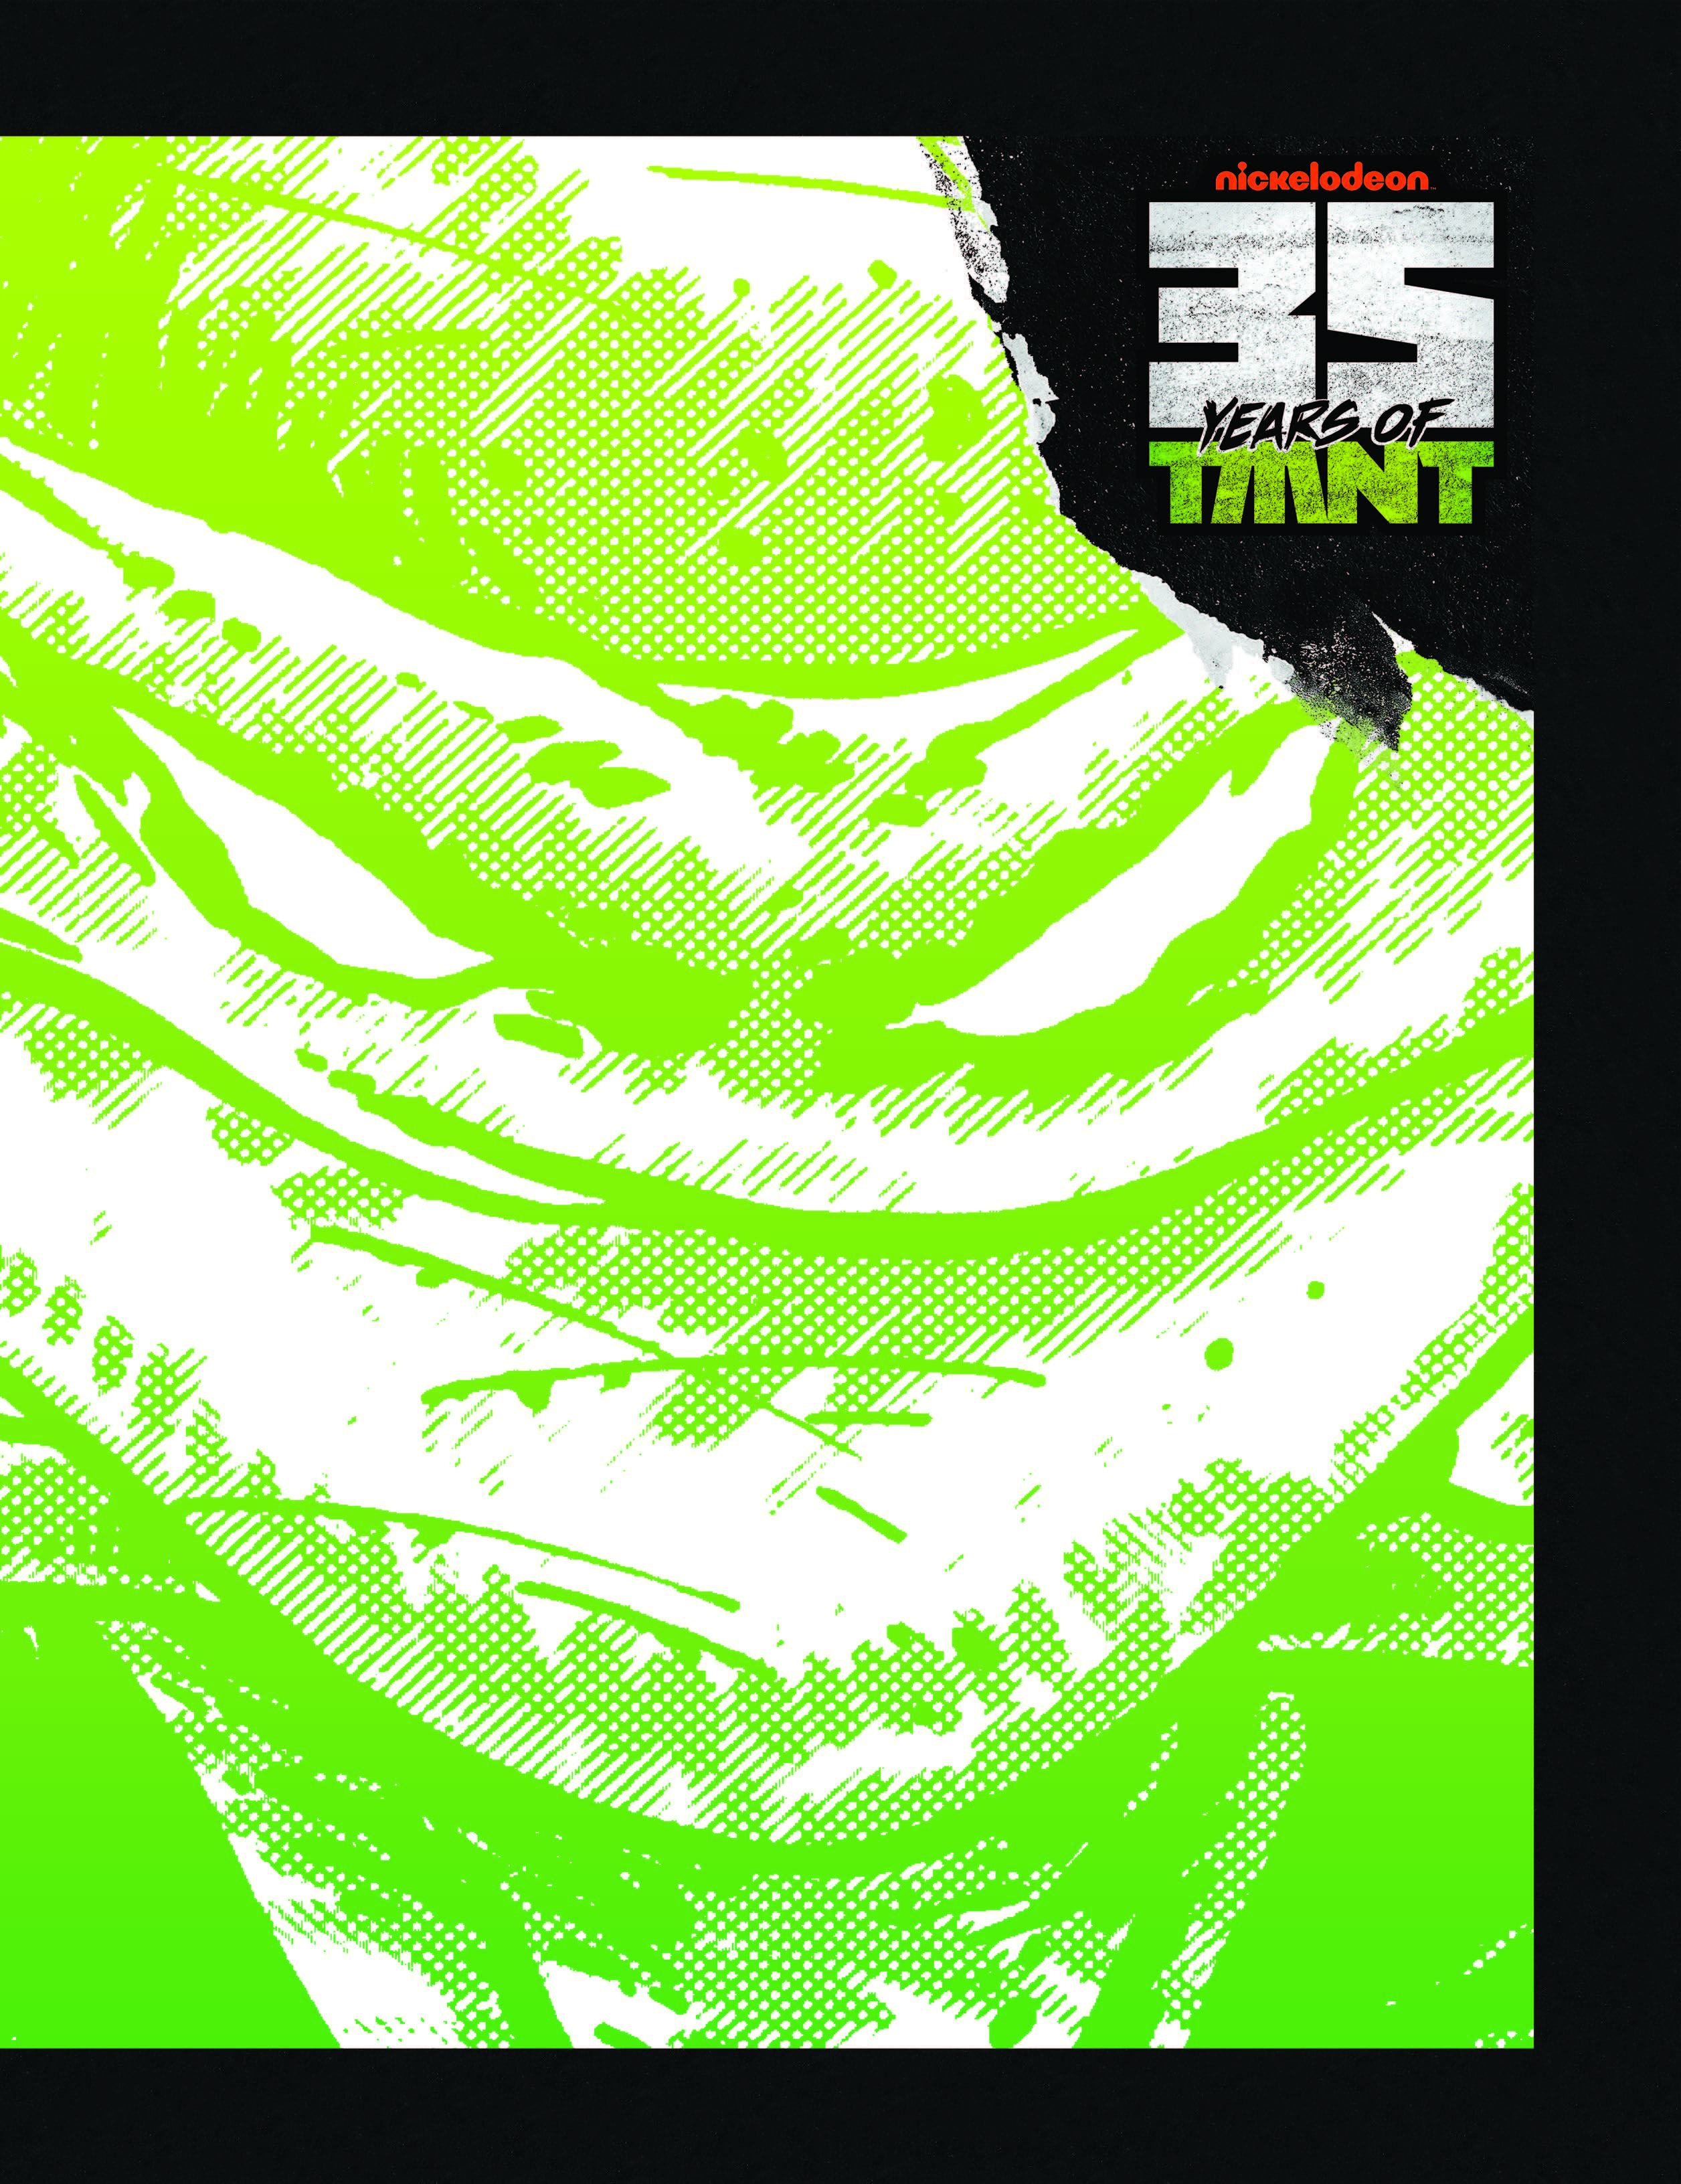 Teenage Mutant Ninja Turtles 35th Anniversary Box Set